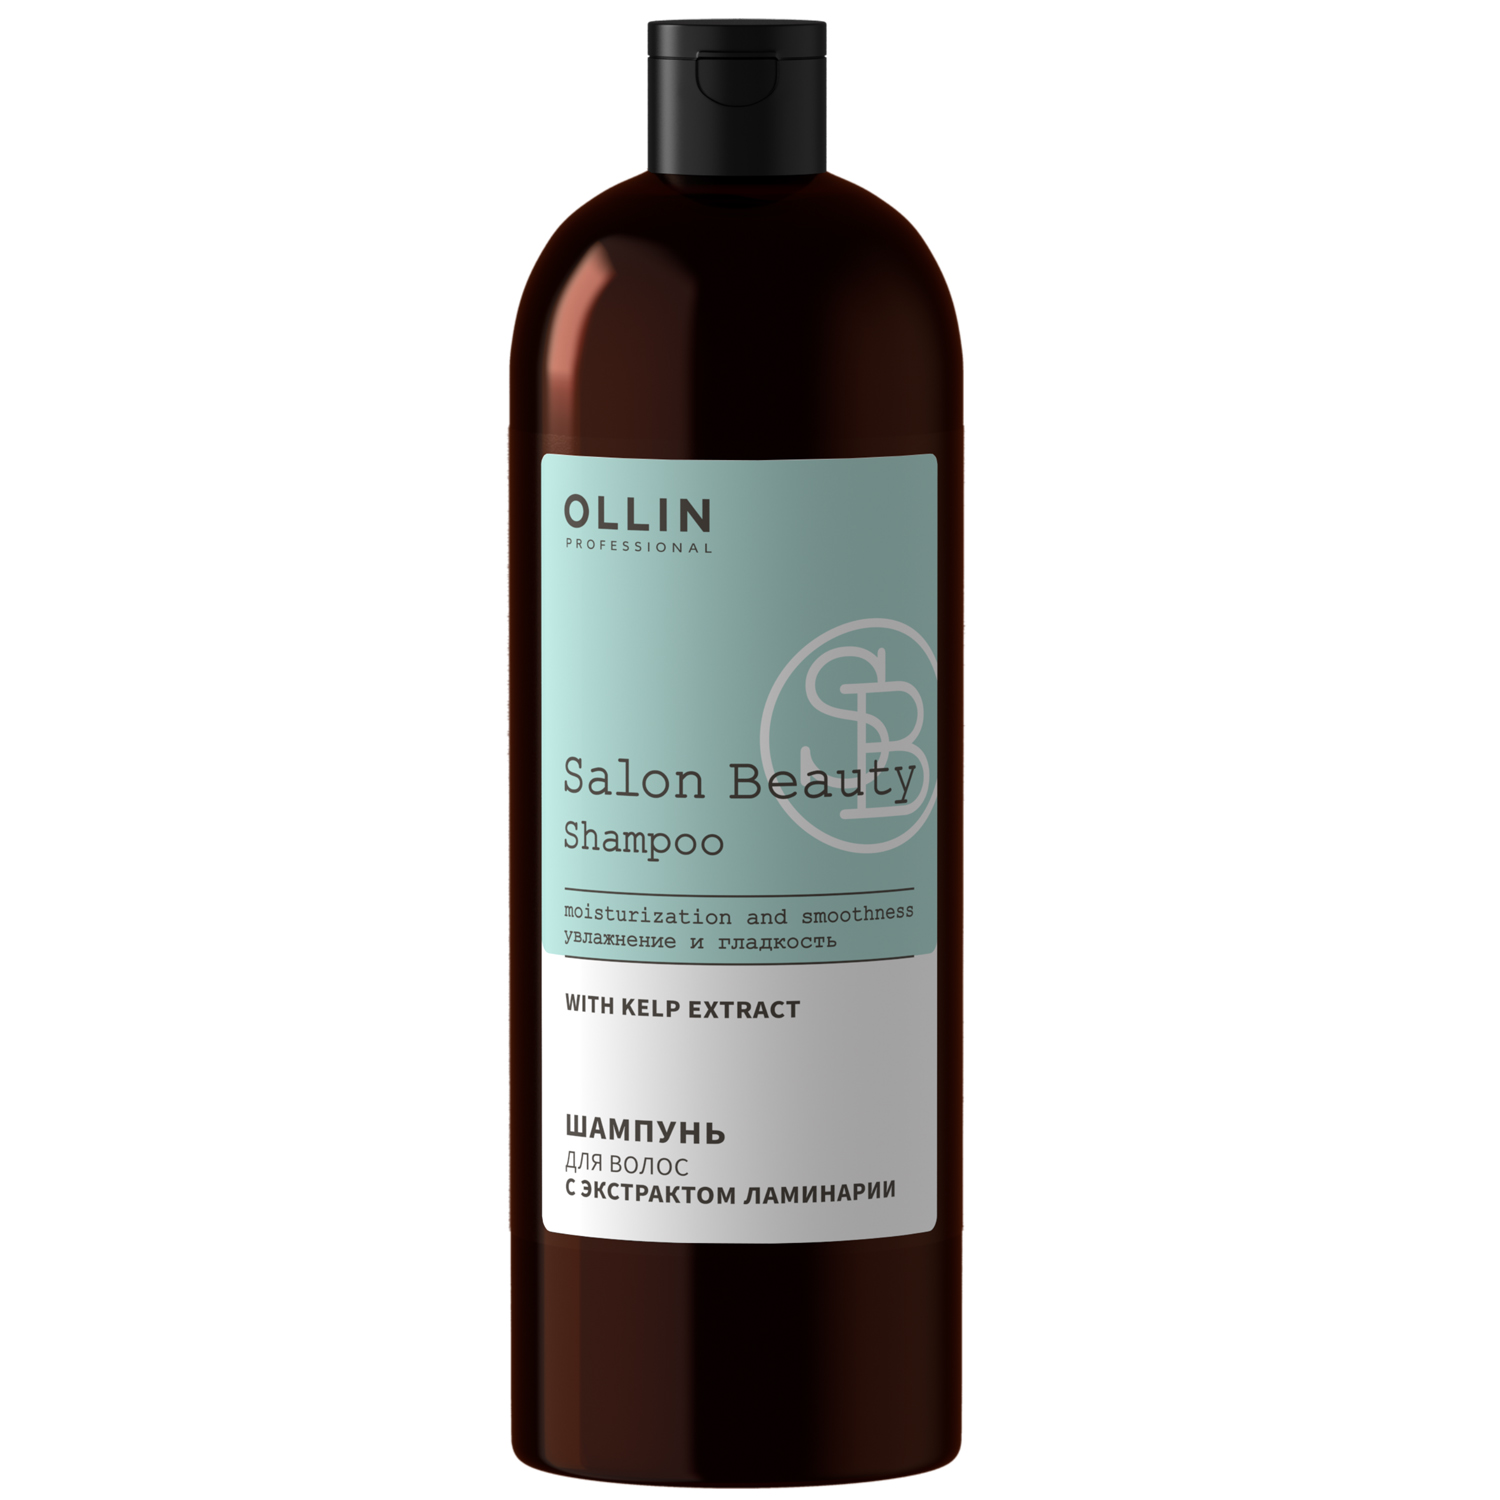 Ollin Professional Шампунь для волос с экстрактом ламинарии,